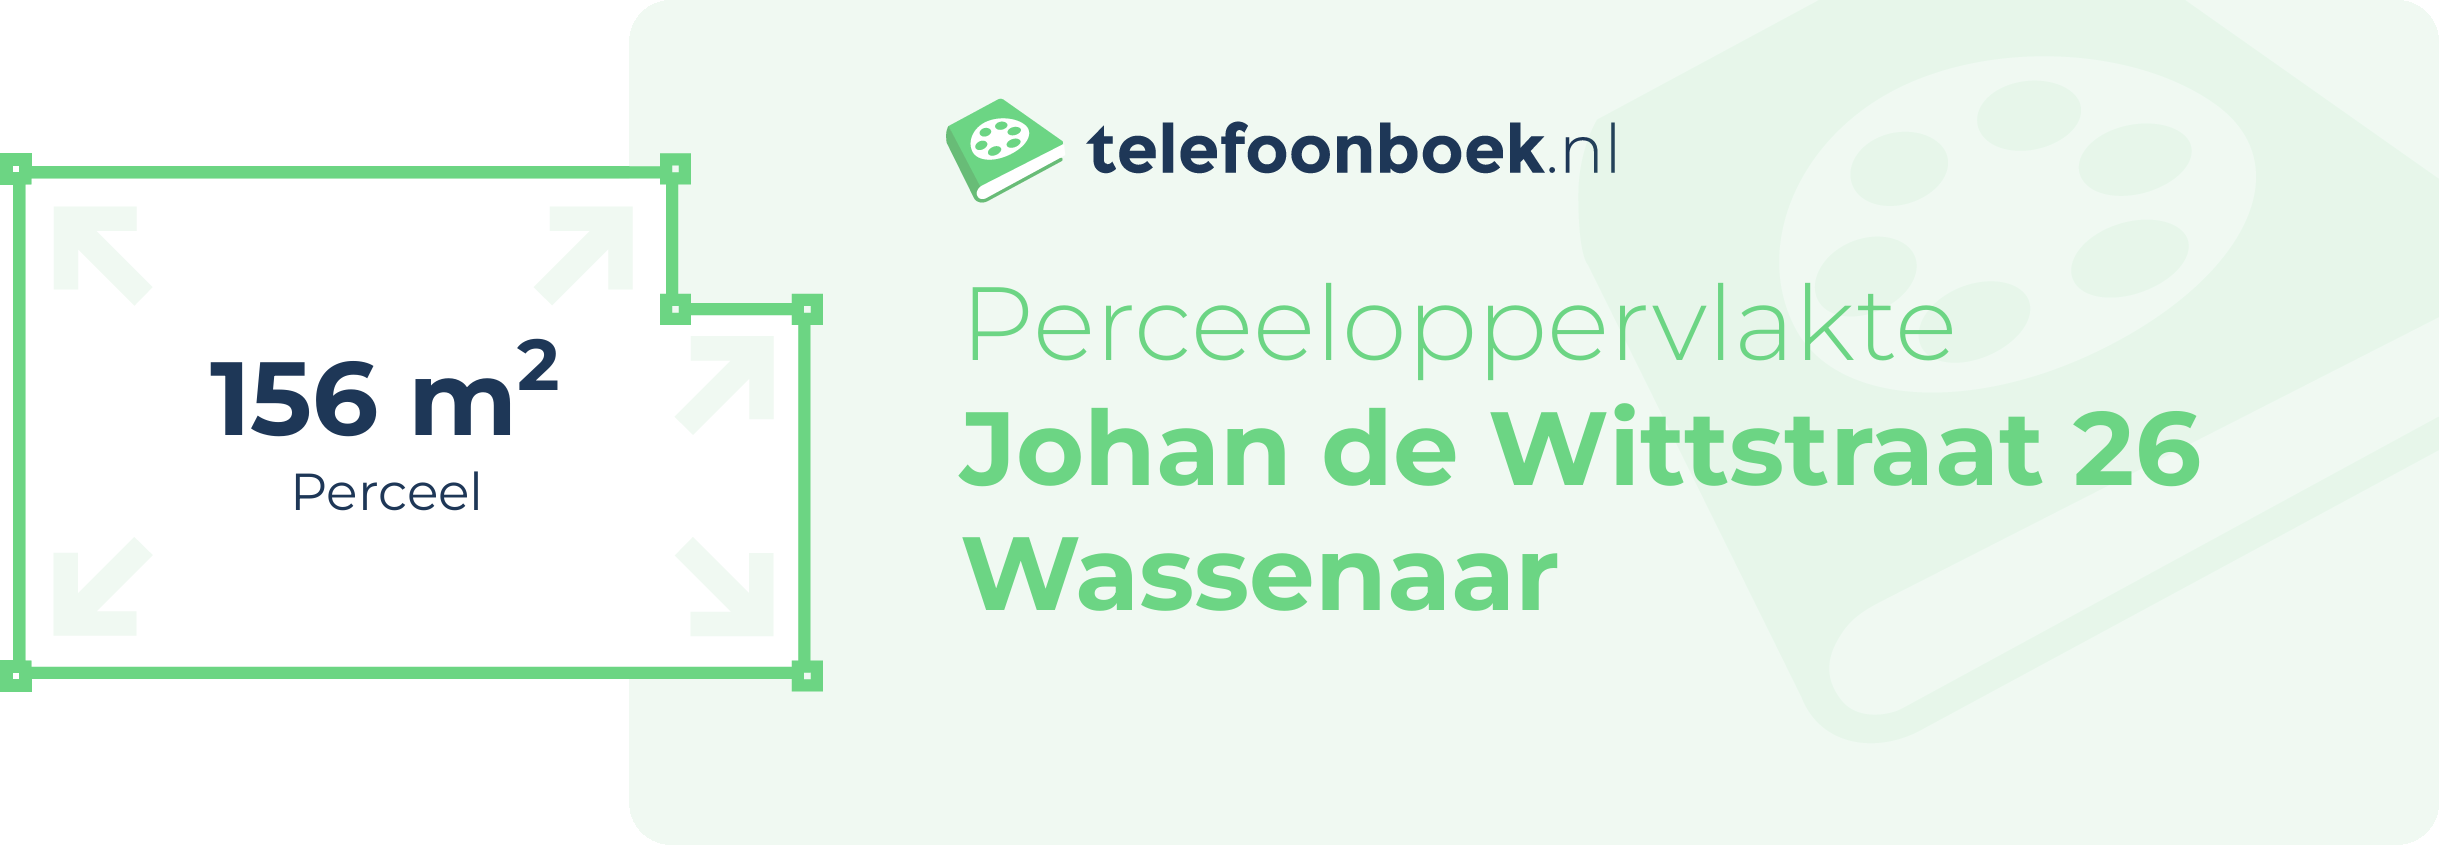 Perceeloppervlakte Johan De Wittstraat 26 Wassenaar